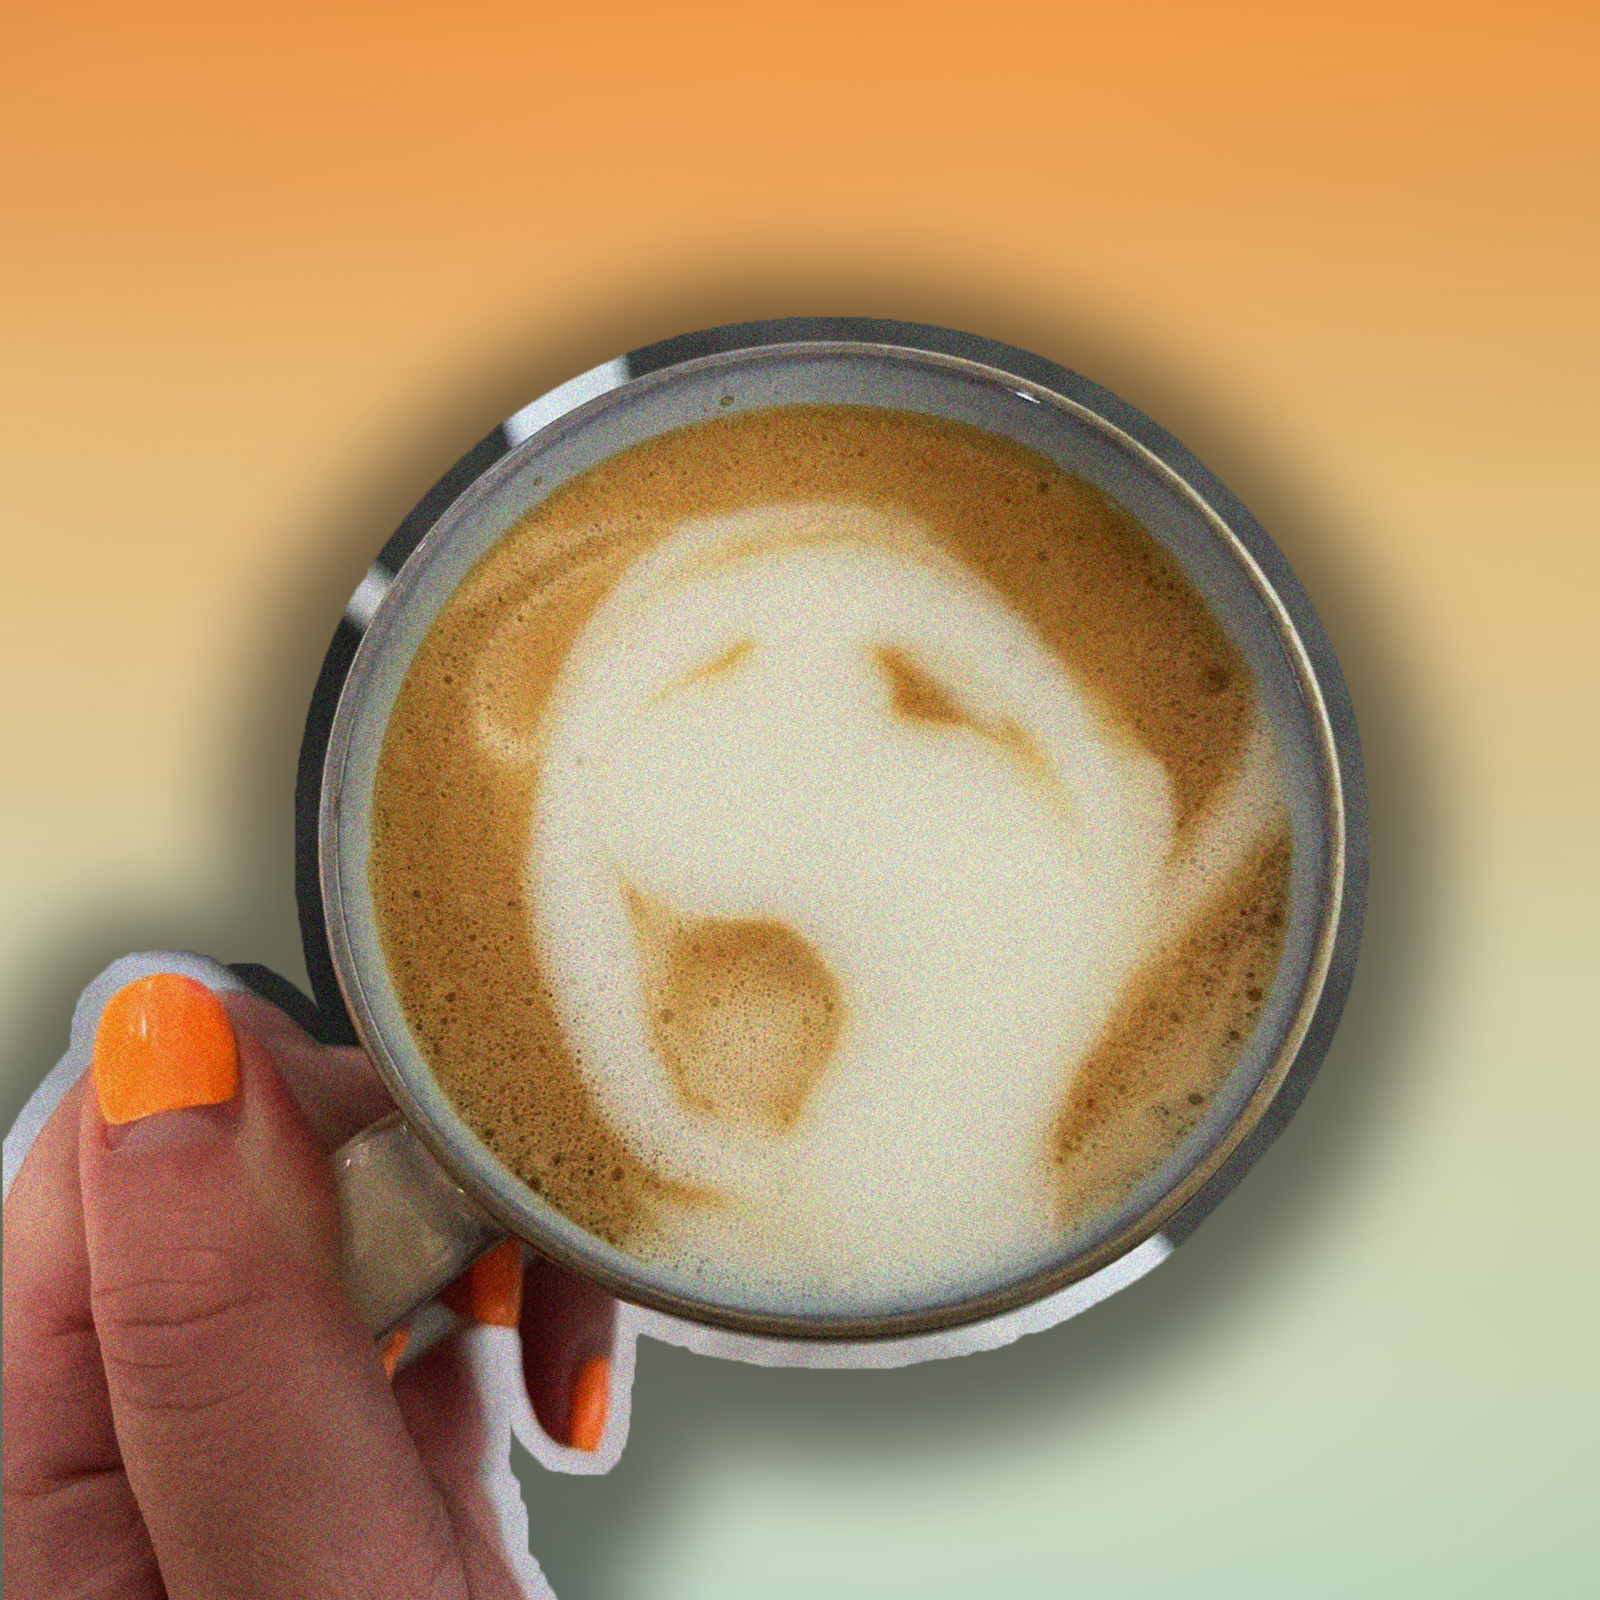 latte art fails